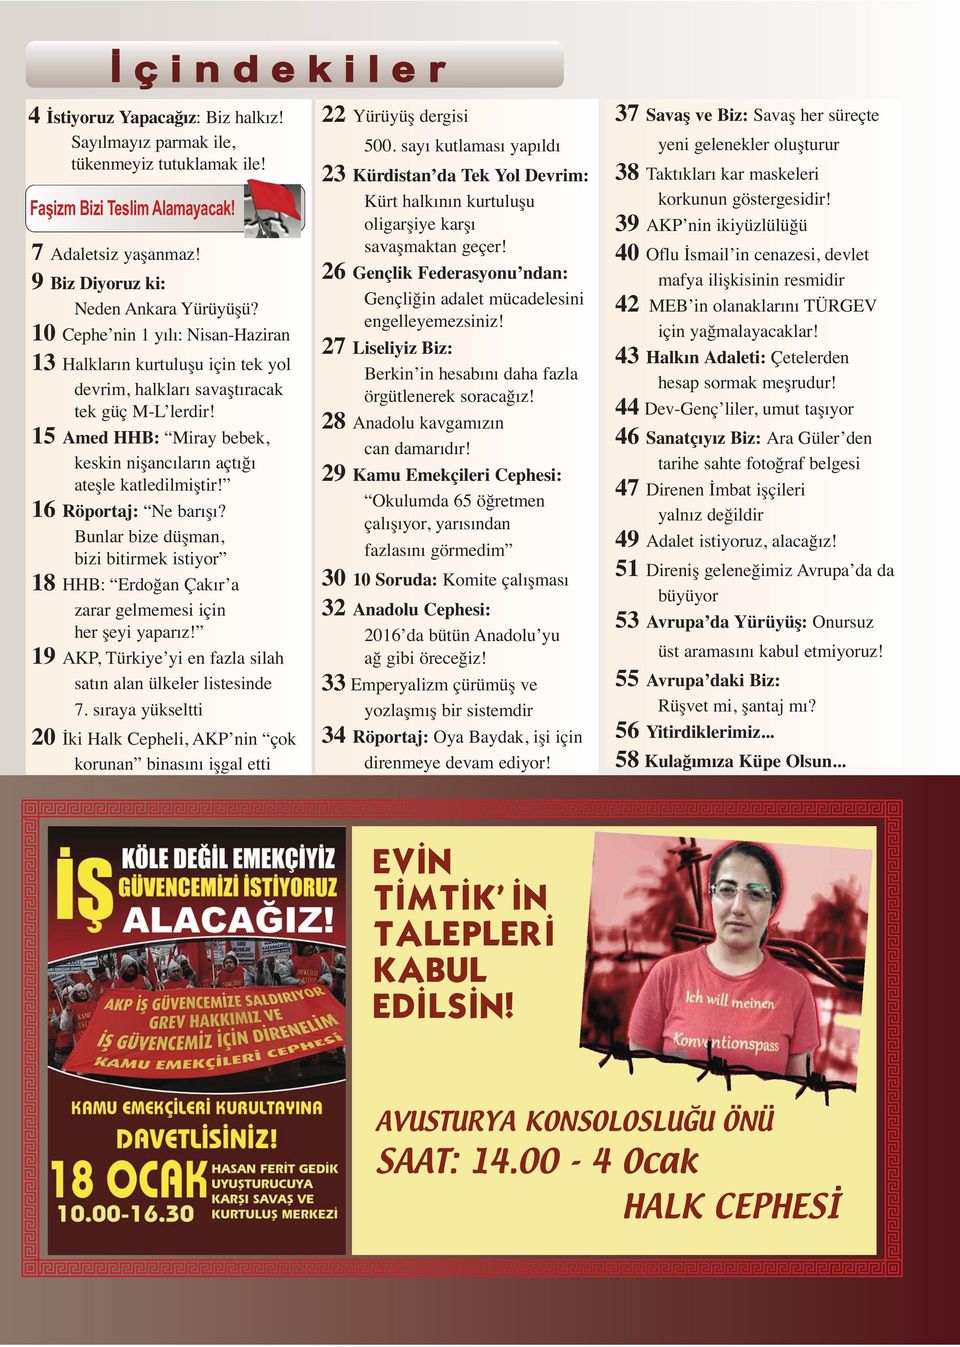 16 Röportaj: Ne barışı? Bunlar bize düşman, bizi bitirmek istiyor 18 HHB: Erdoğan Çakır a zarar gelmemesi için her şeyi yaparız! 19 AKP, Türkiye yi en fazla silah satın alan ülkeler listesinde 7.